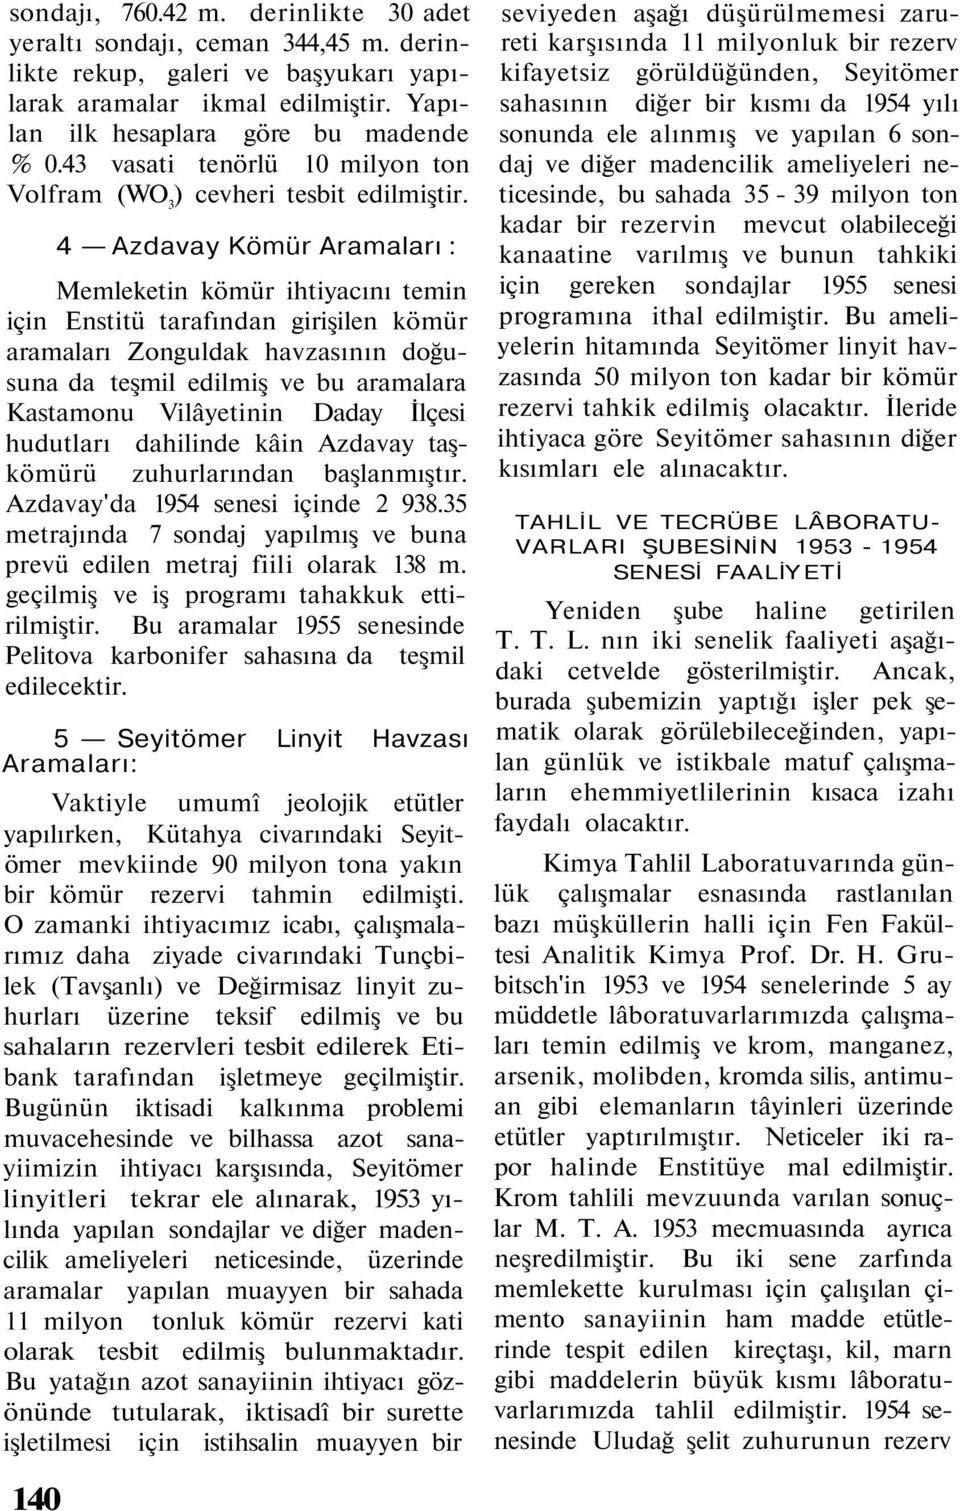 4 Azdavay Kömür Aramaları : Memleketin kömür ihtiyacını temin için Enstitü tarafından girişilen kömür aramaları Zonguldak havzasının doğusuna da teşmil edilmiş ve bu aramalara Kastamonu Vilâyetinin